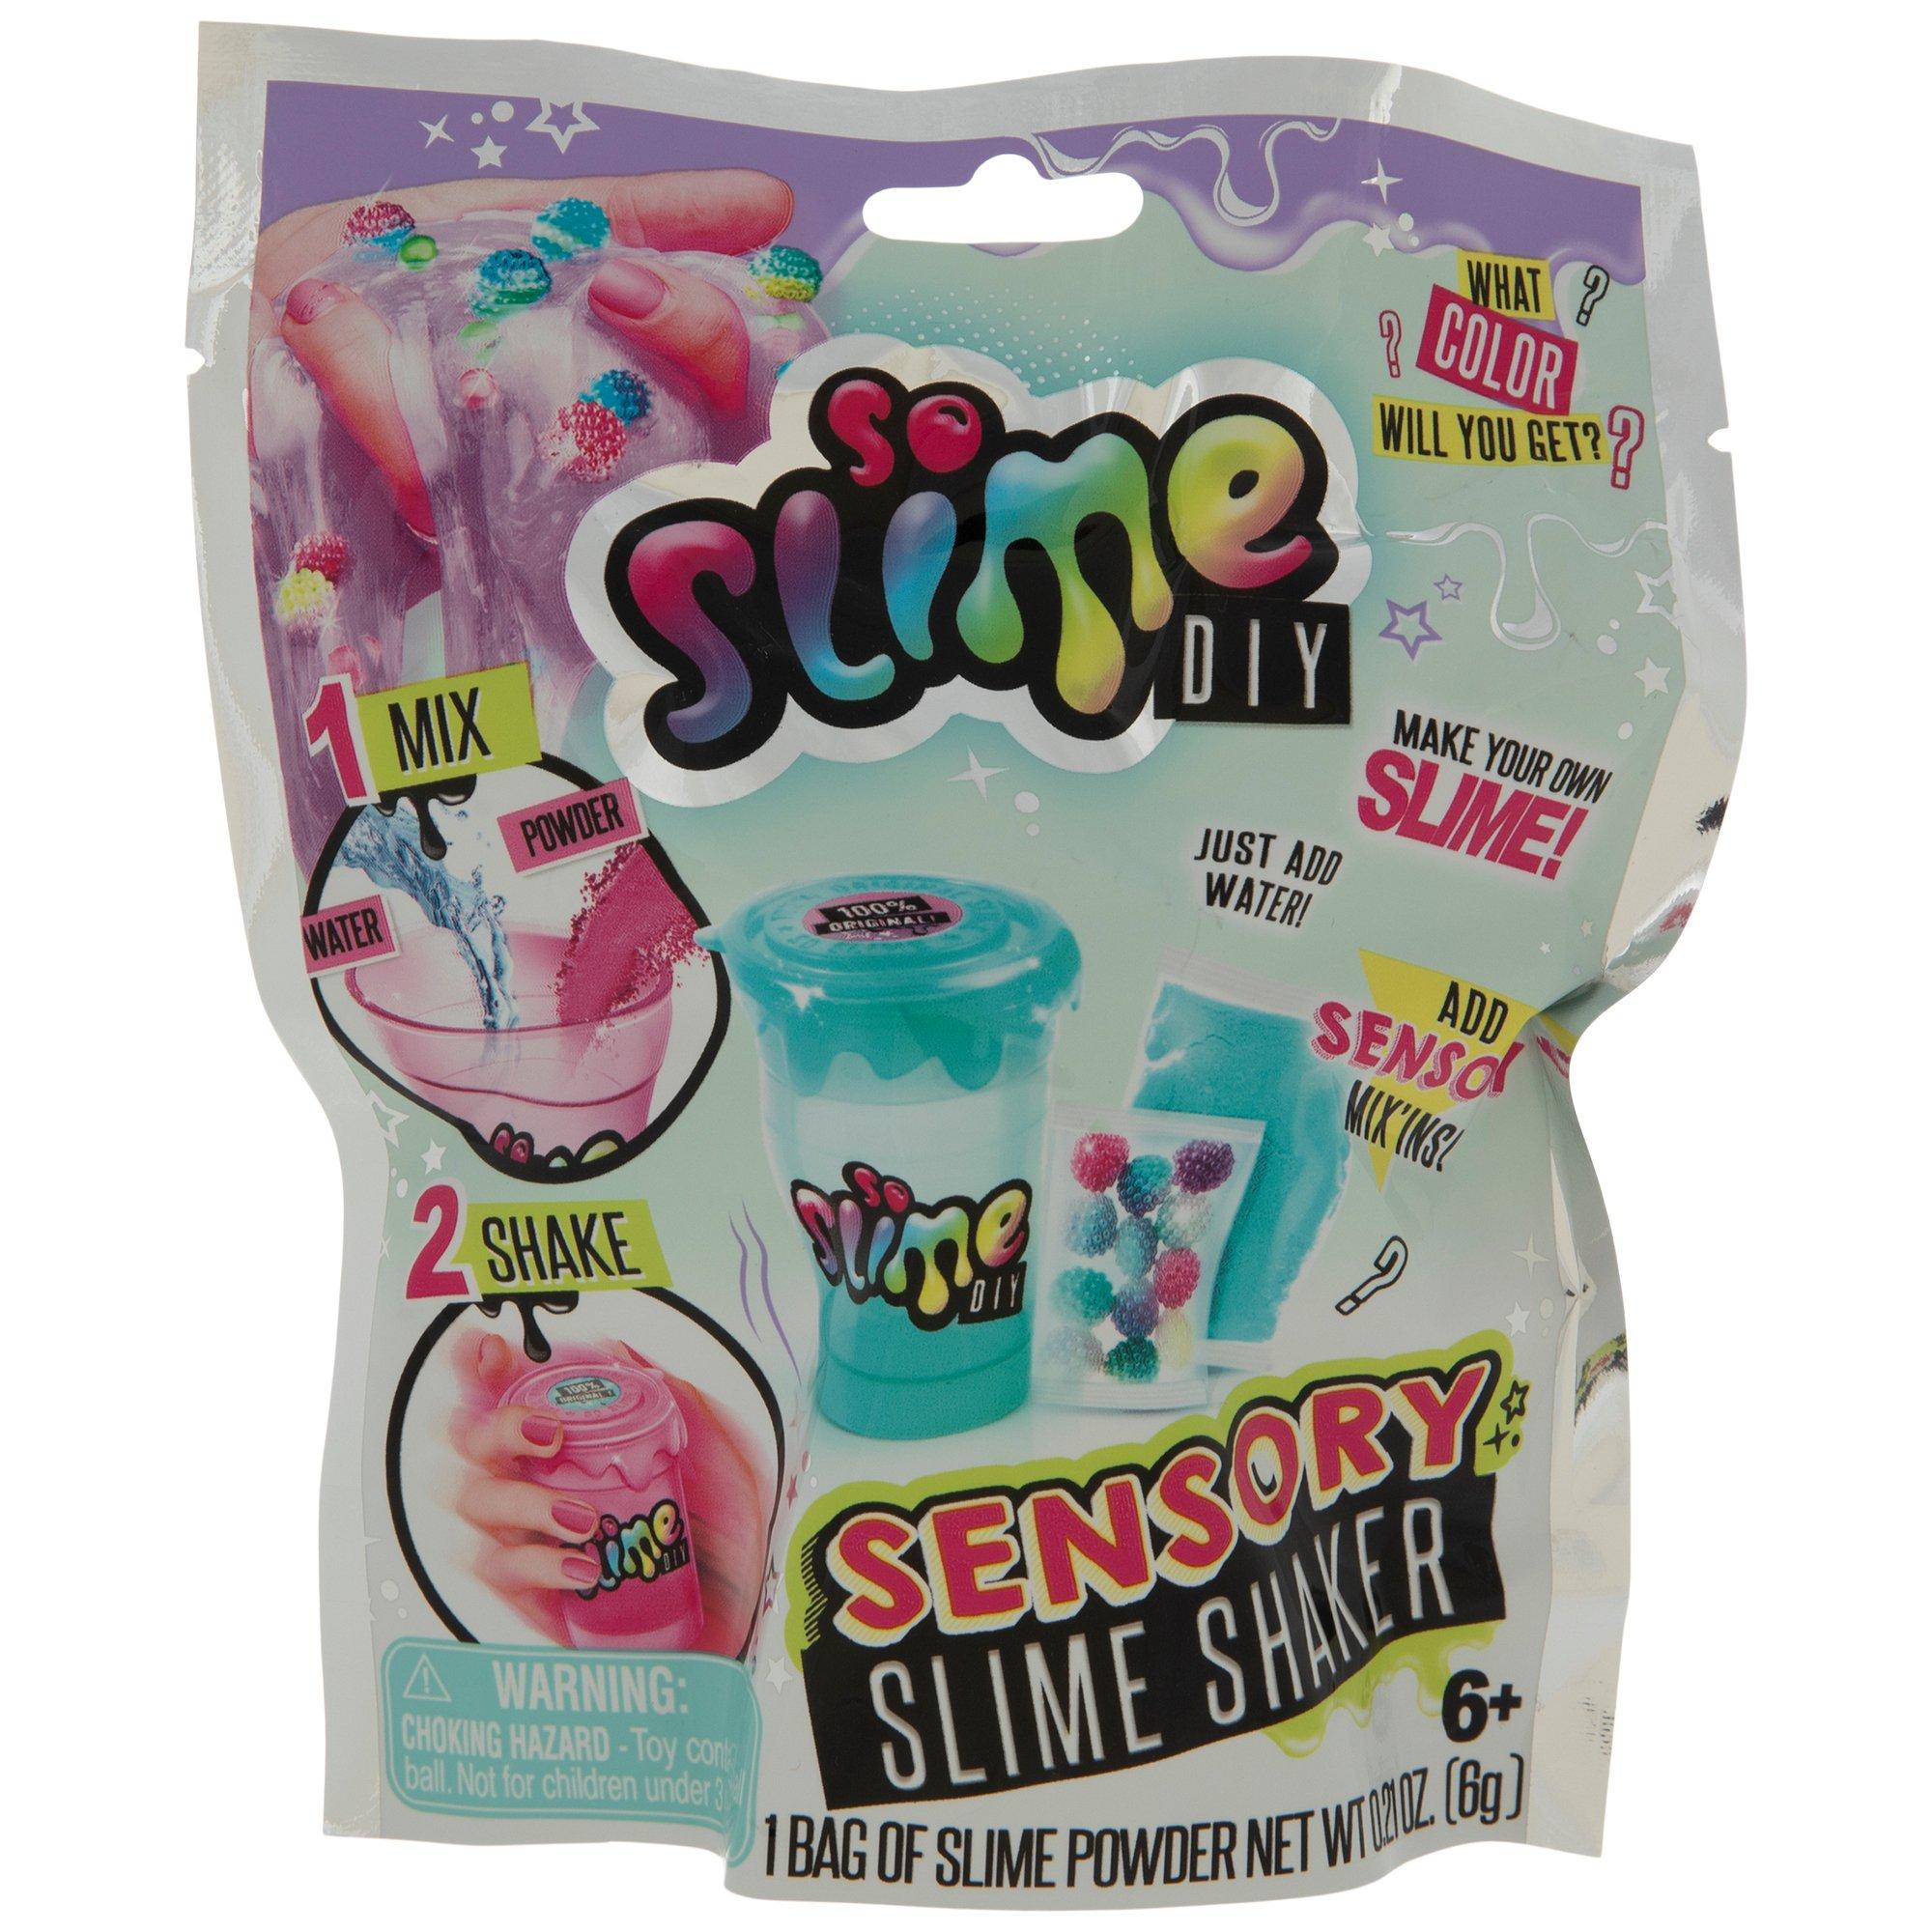 So Slime Sensory Slime Shaker Kit, Hobby Lobby